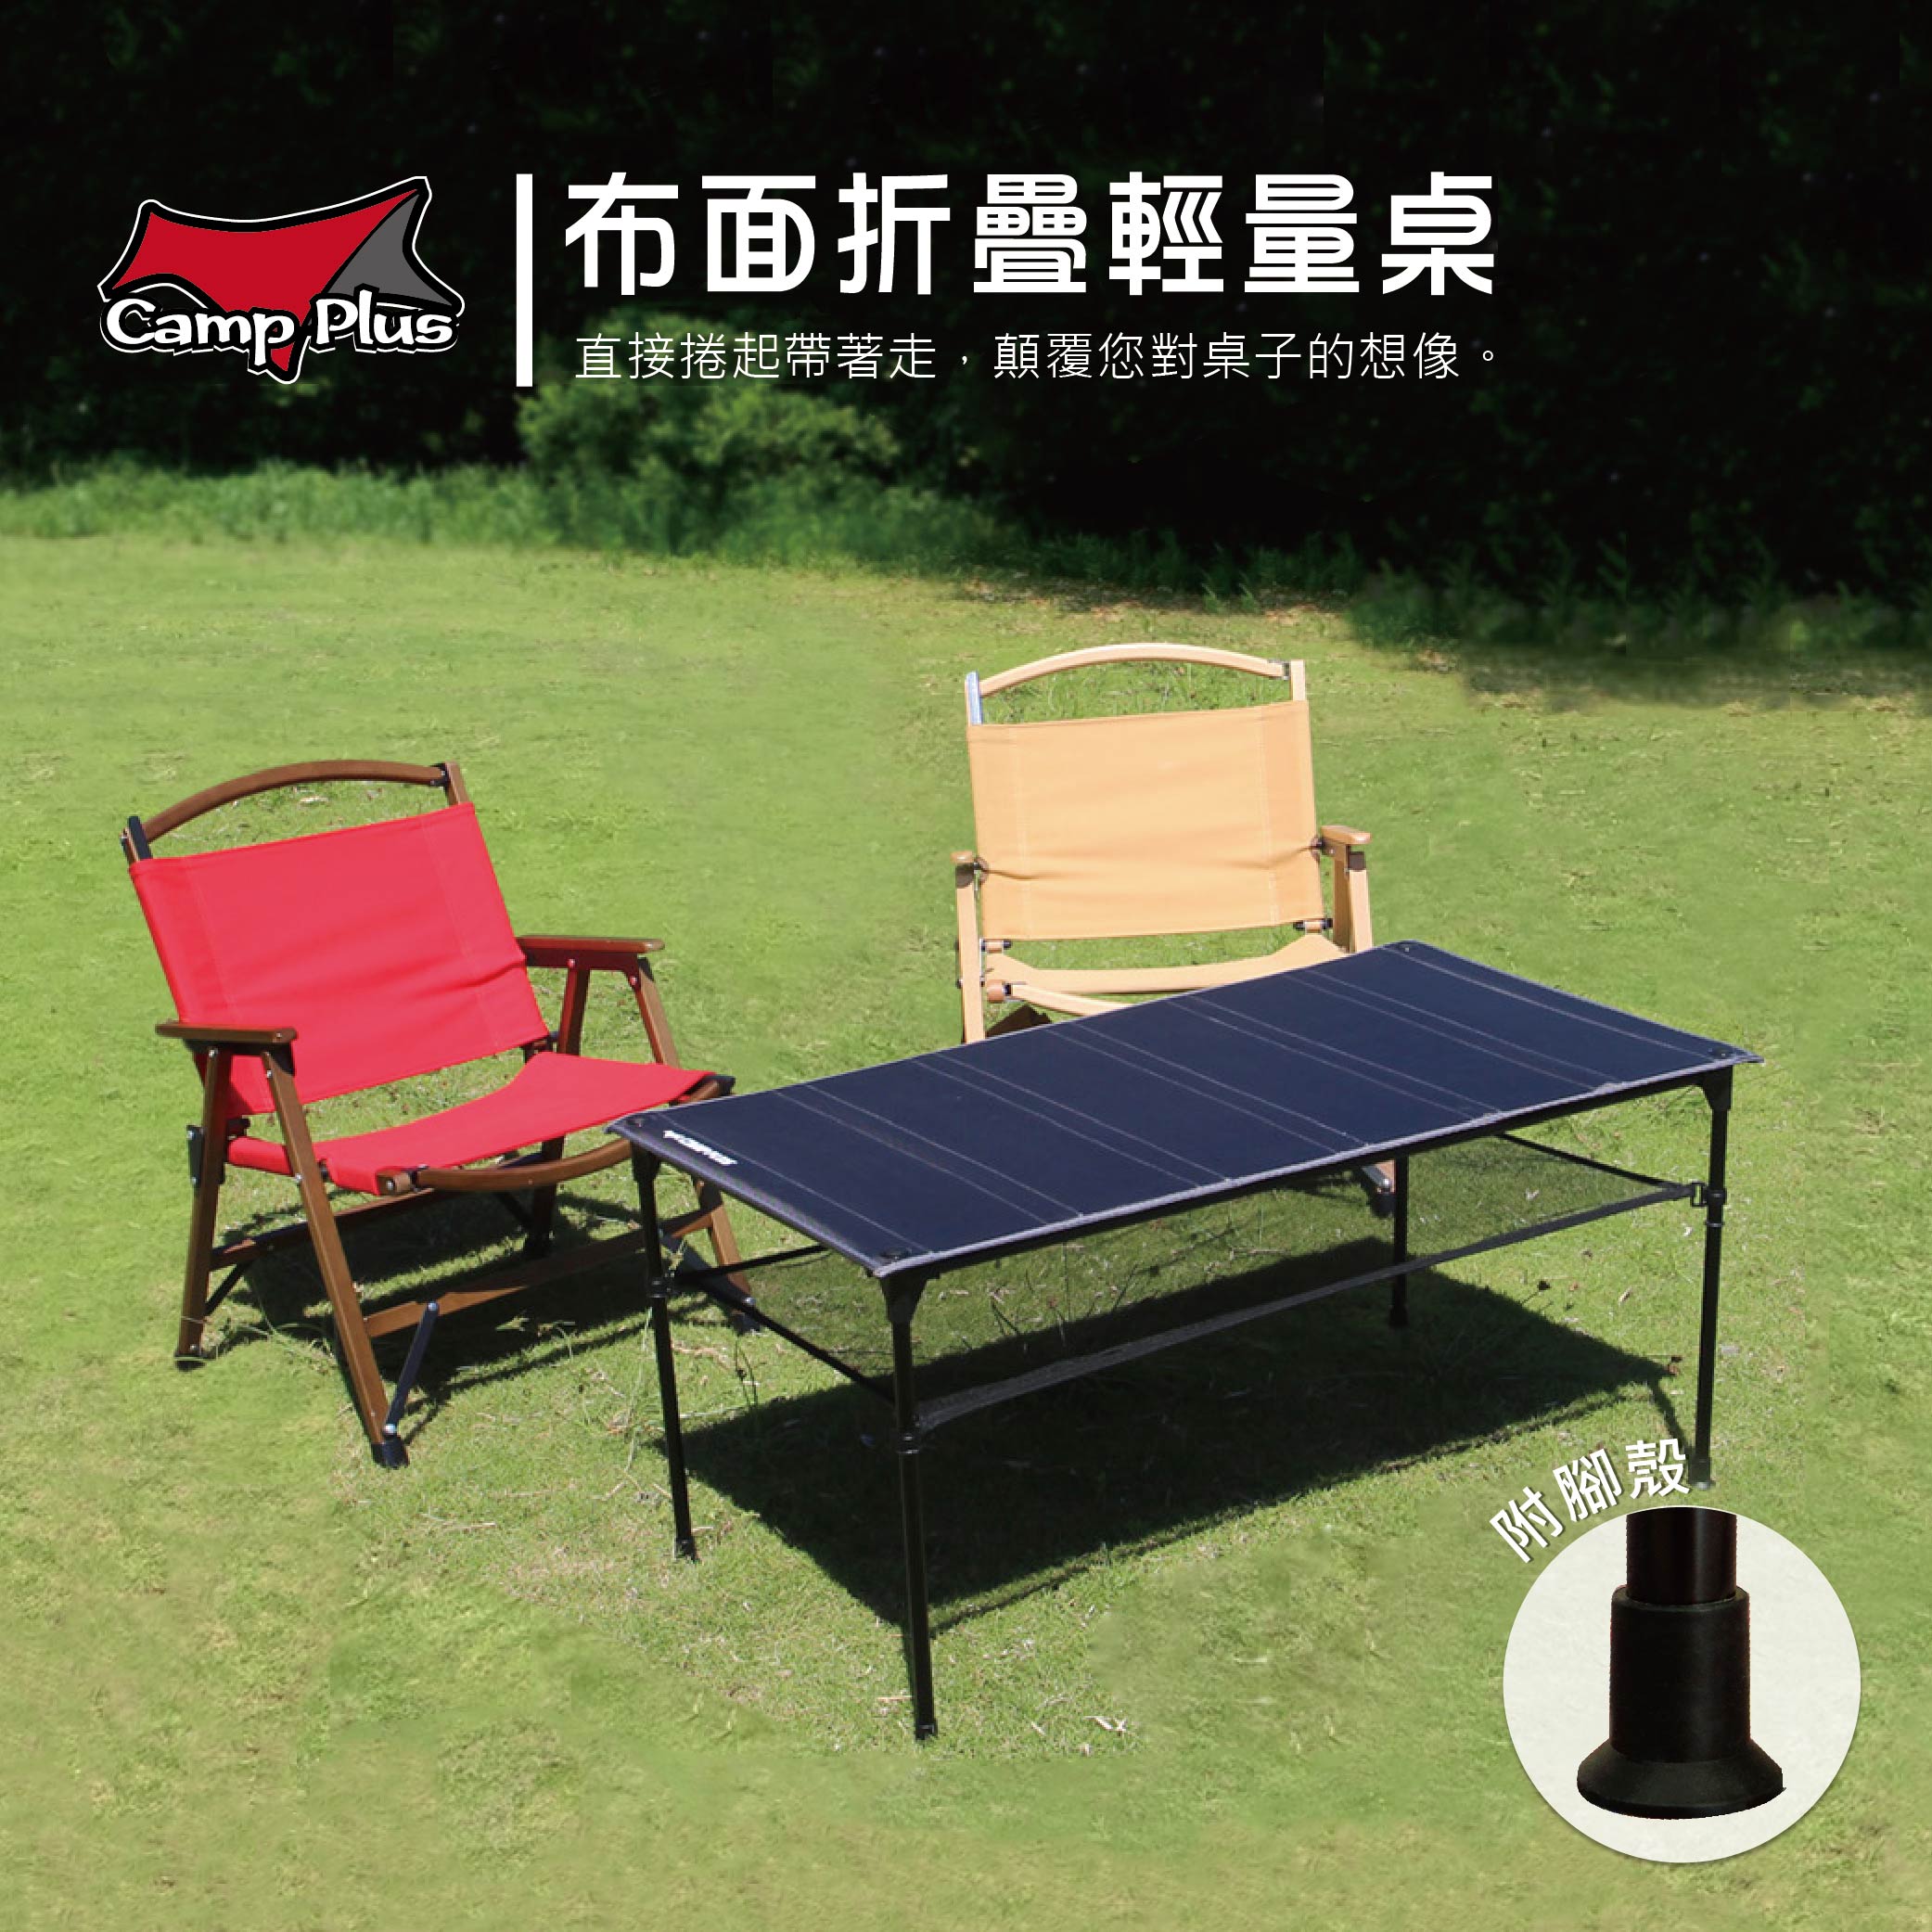 【全新上市】Camp Plus 布面桌 輕量組合桌 折疊桌 可捲起 悠遊戶外